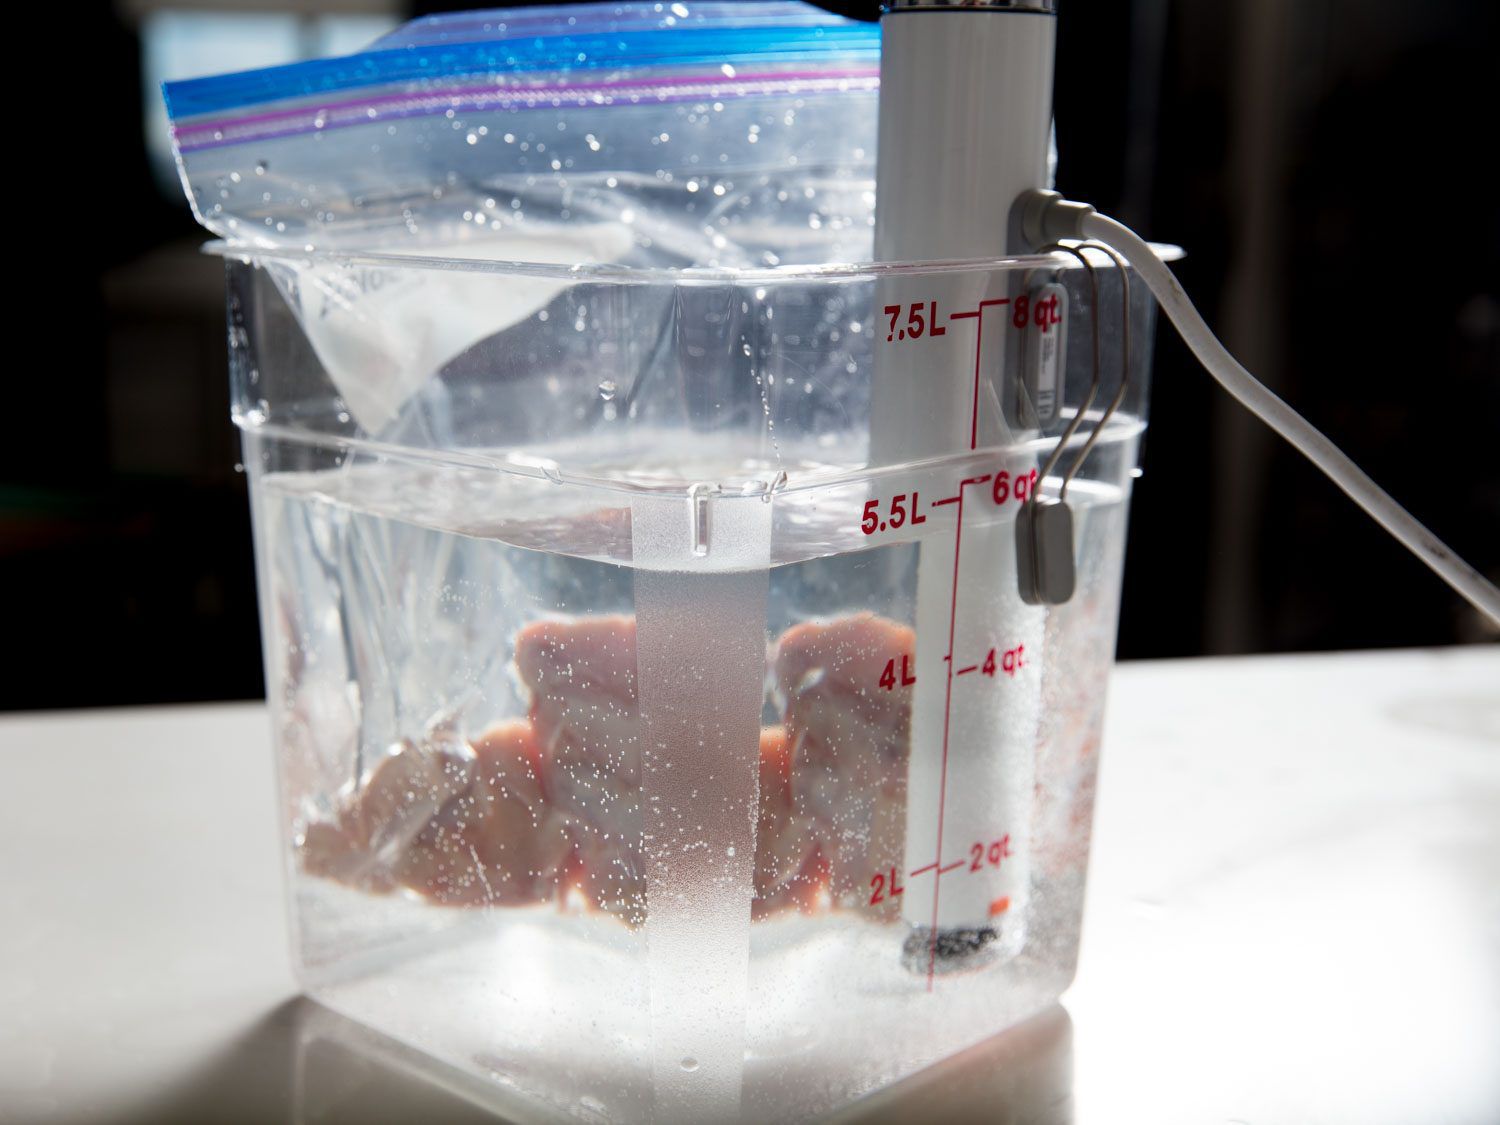 真空包装鸡翅在水浴的温度,是由一个浸入式循环器控制